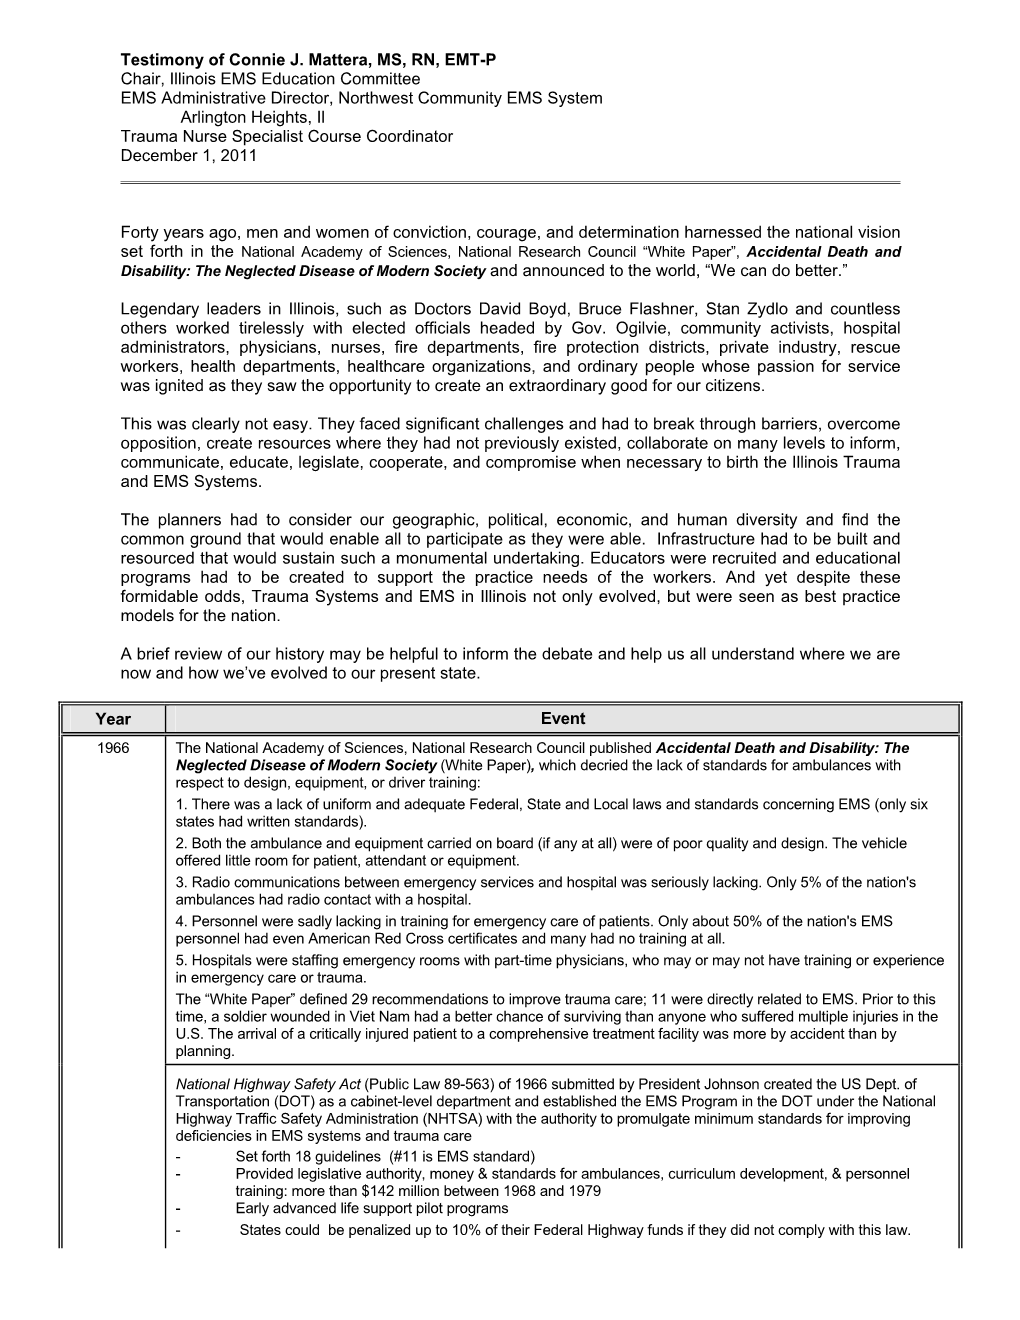 Mattera EMS Task Force Testimony 12-11